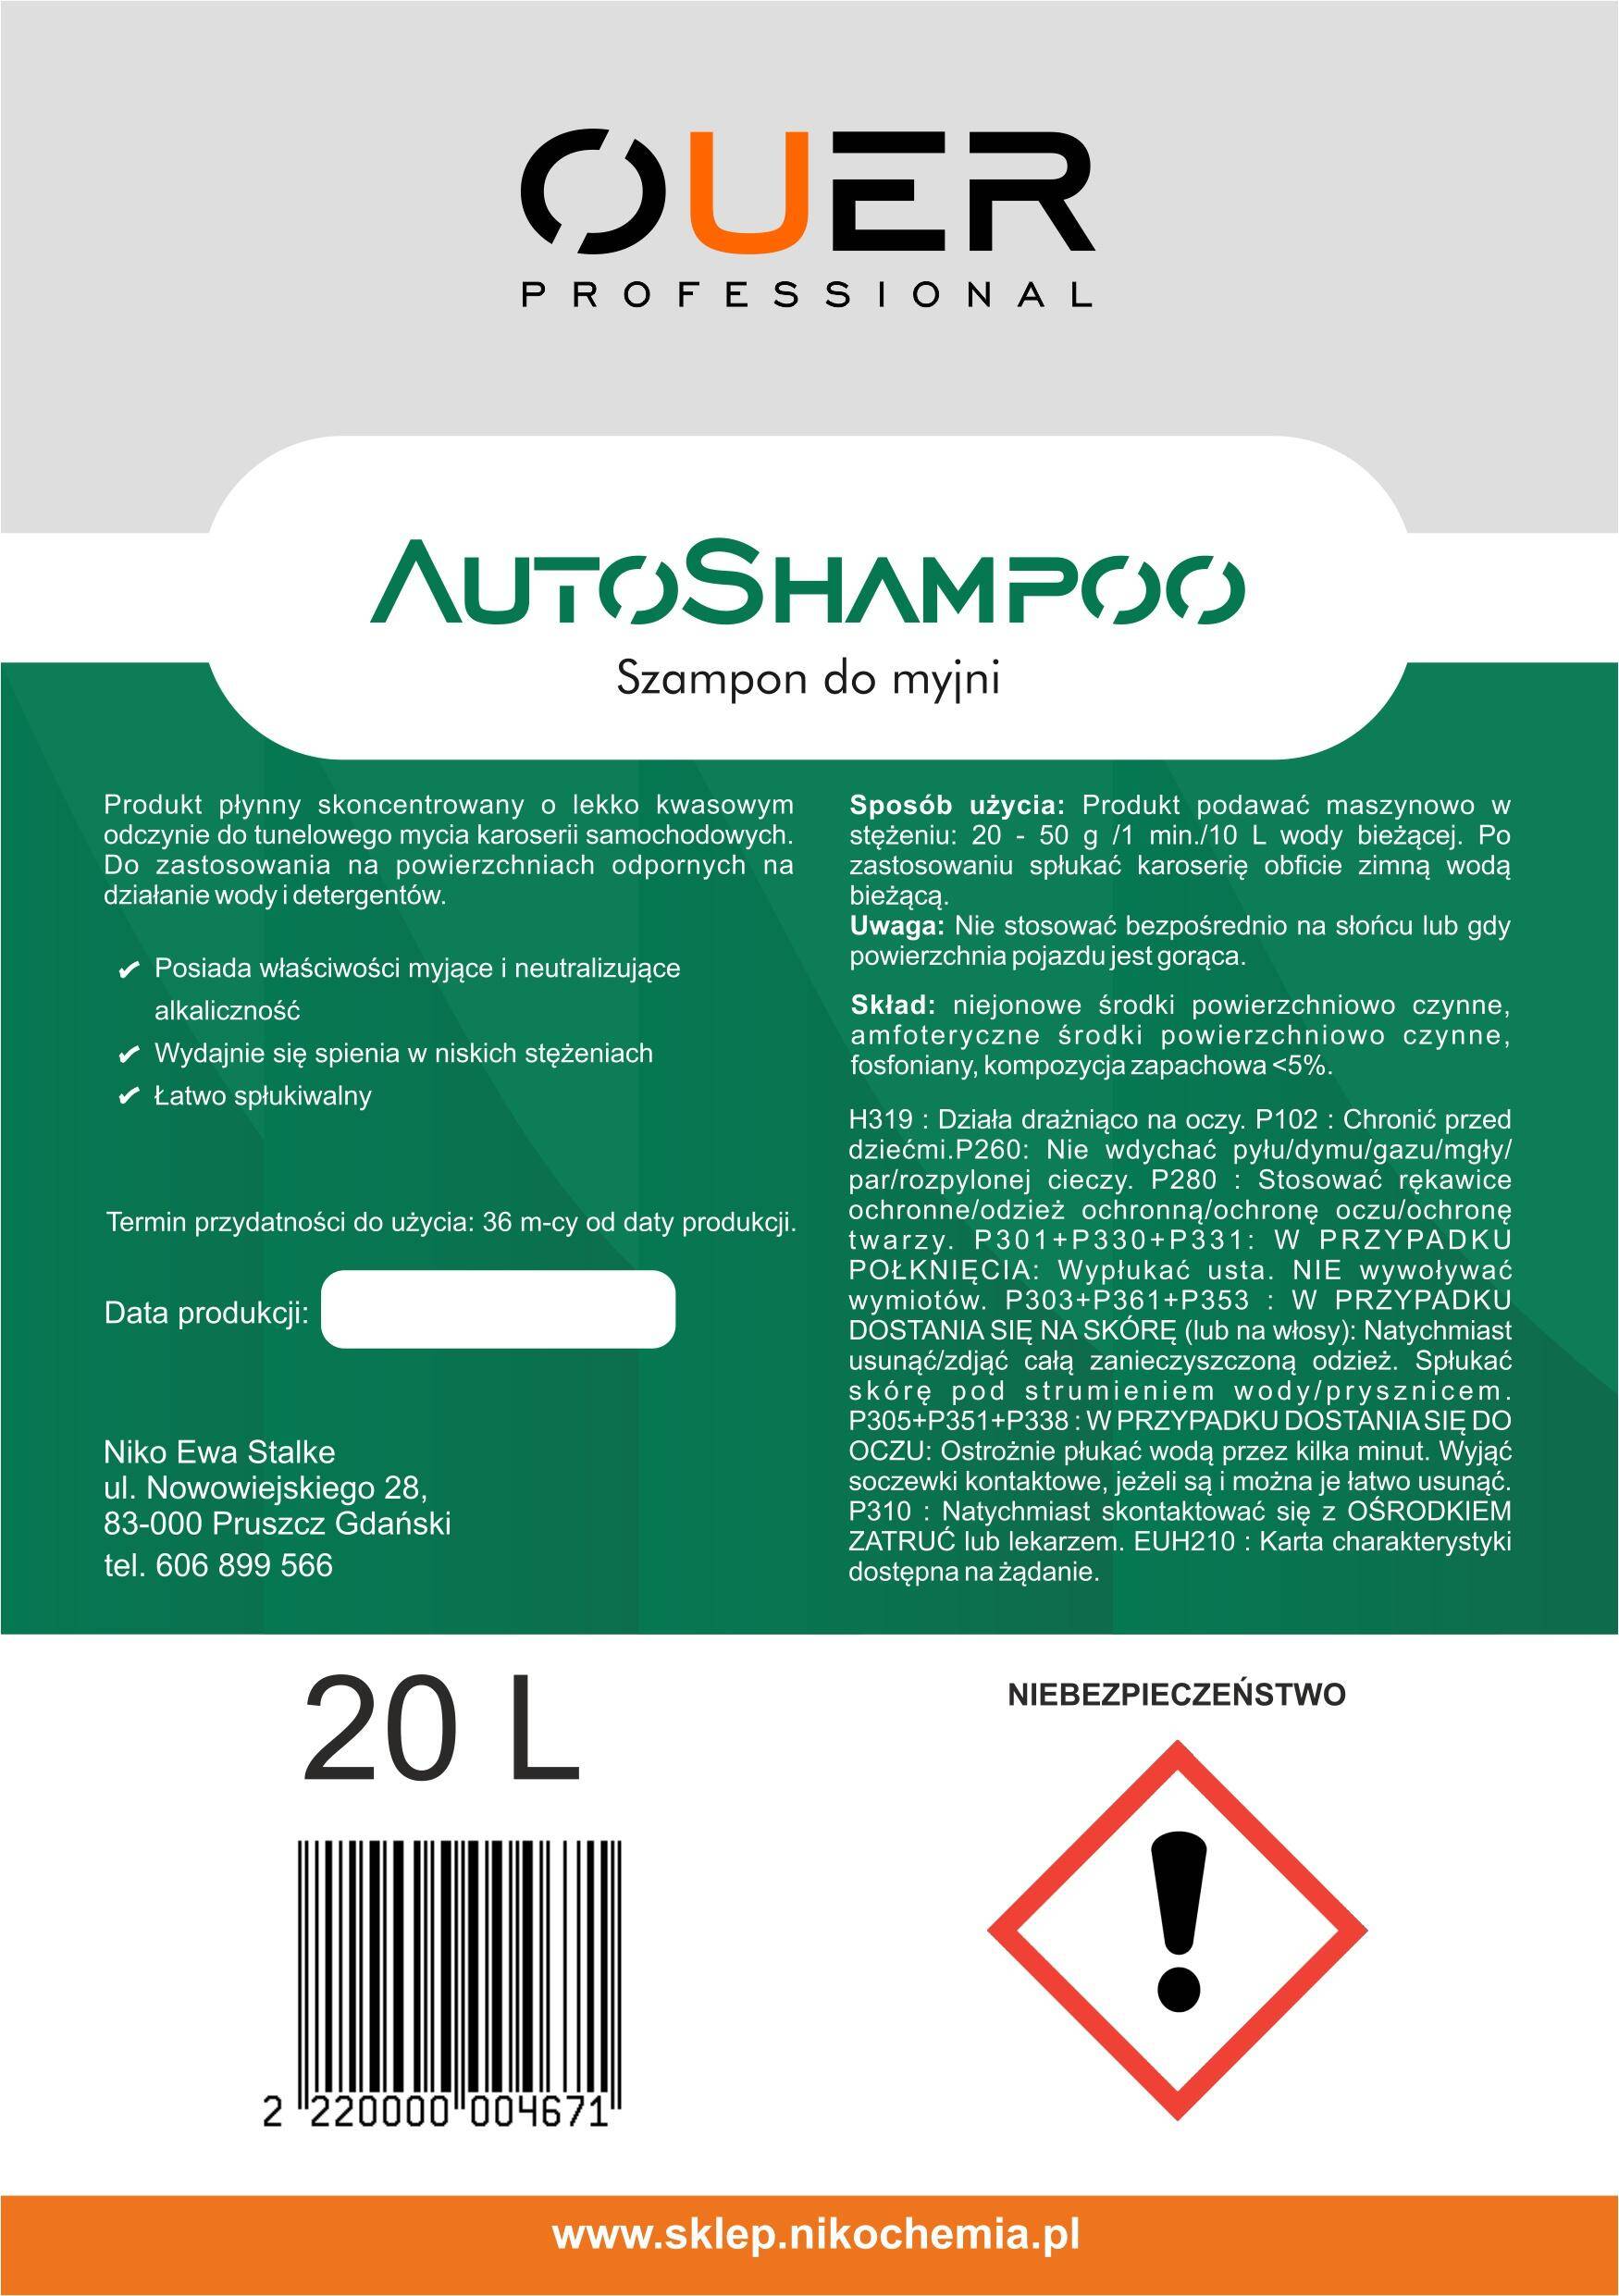 Ouer - AutoSHAMPOO 20 L (Zdjęcie 2)